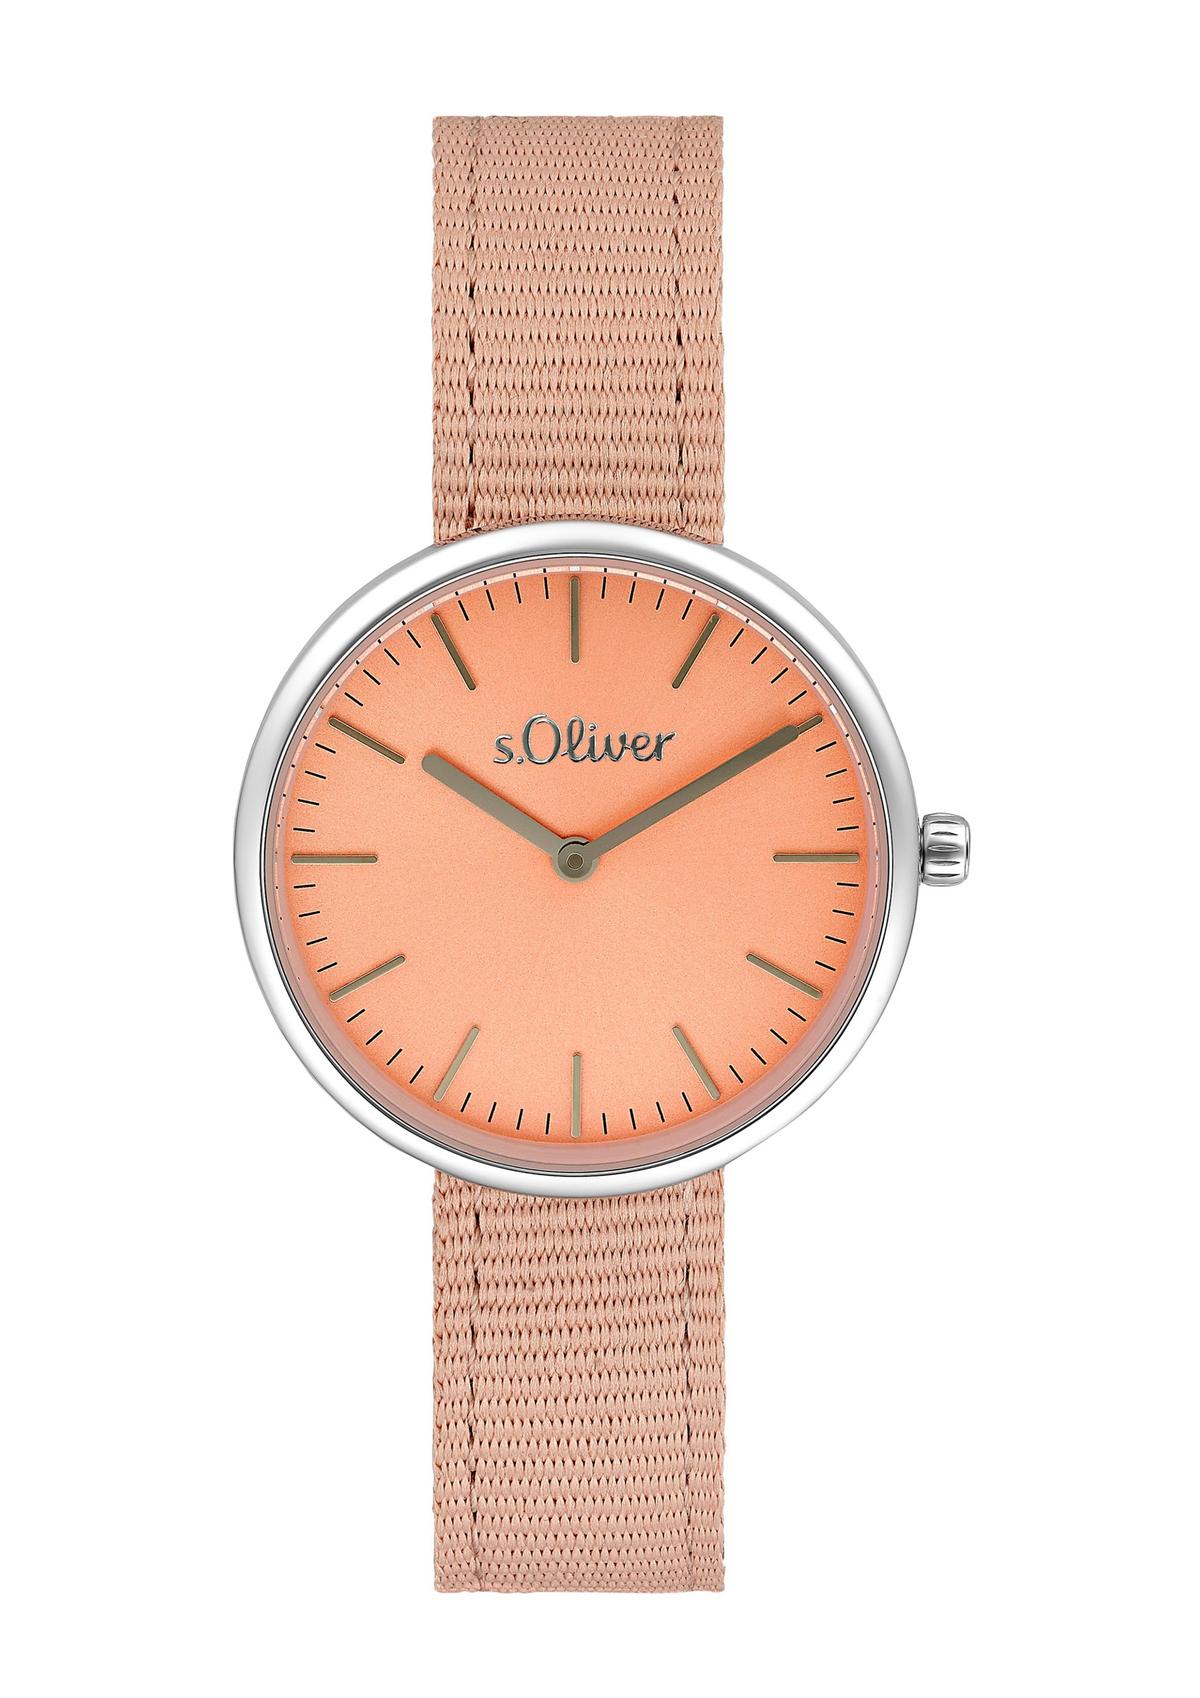 s.Oliver Moderne Uhr mit Textilarmband